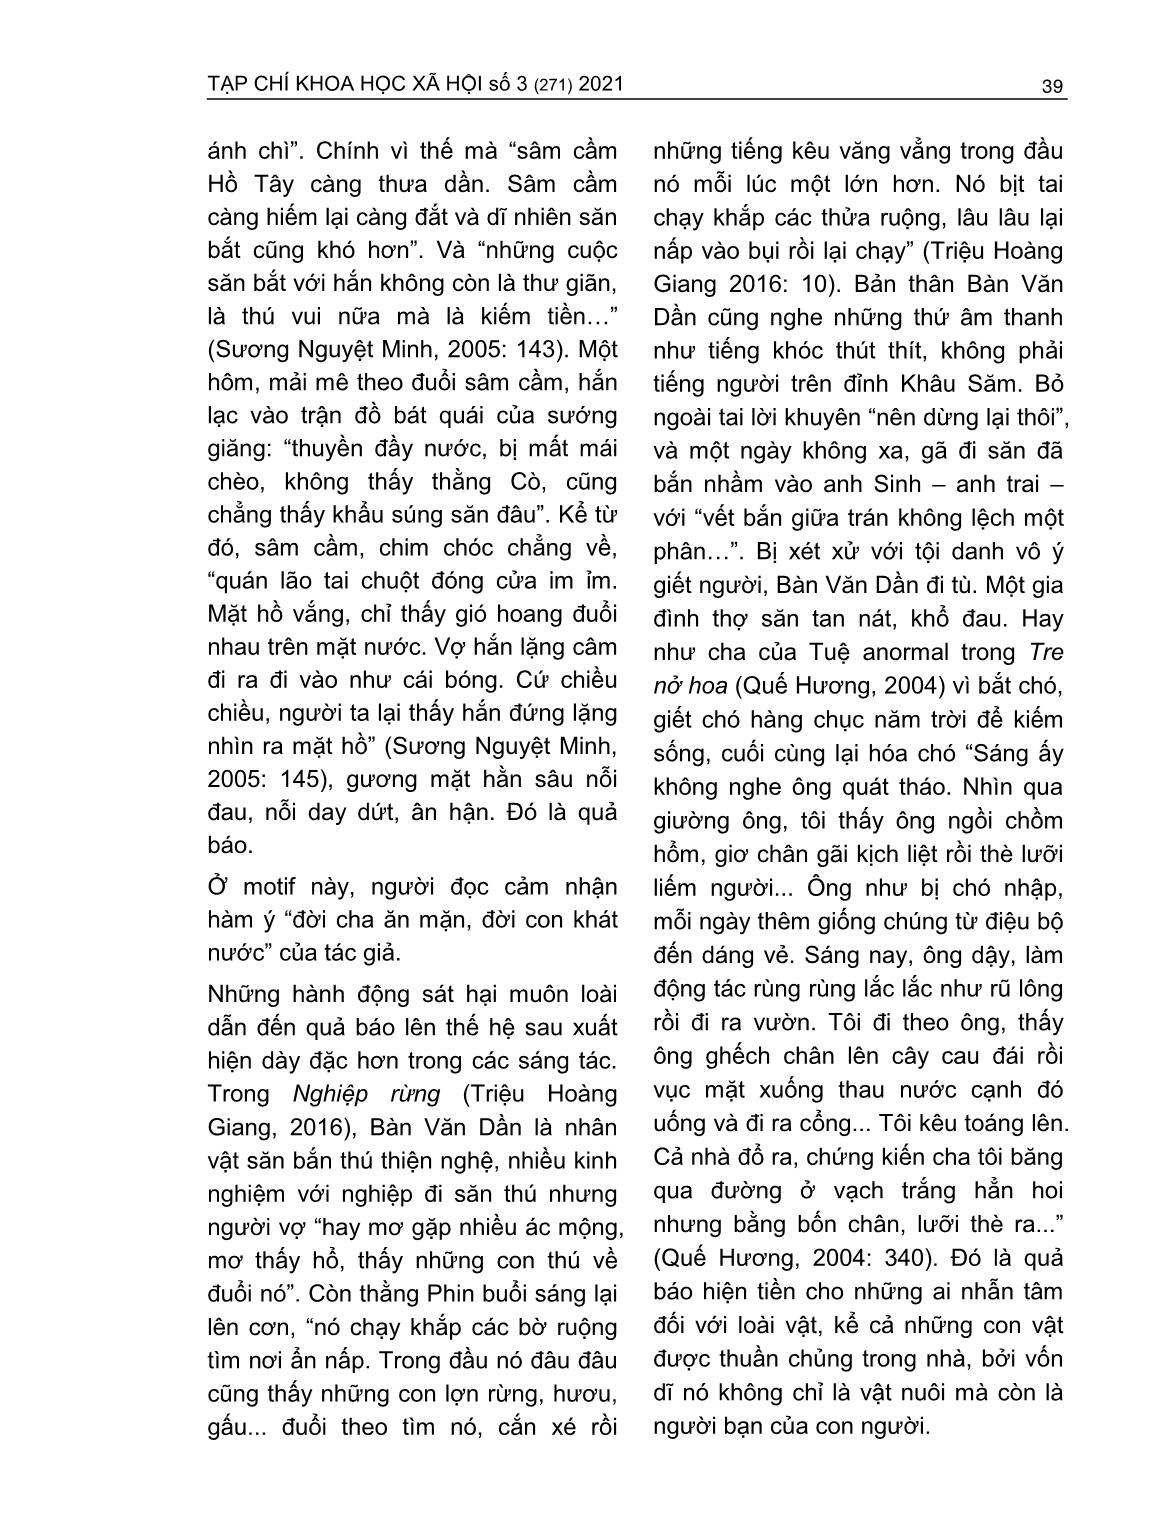 Motif nhân quả báo ứng trong văn xuôi sinh thái Việt Nam đương đại từ góc nhìn Phật Giáo trang 7